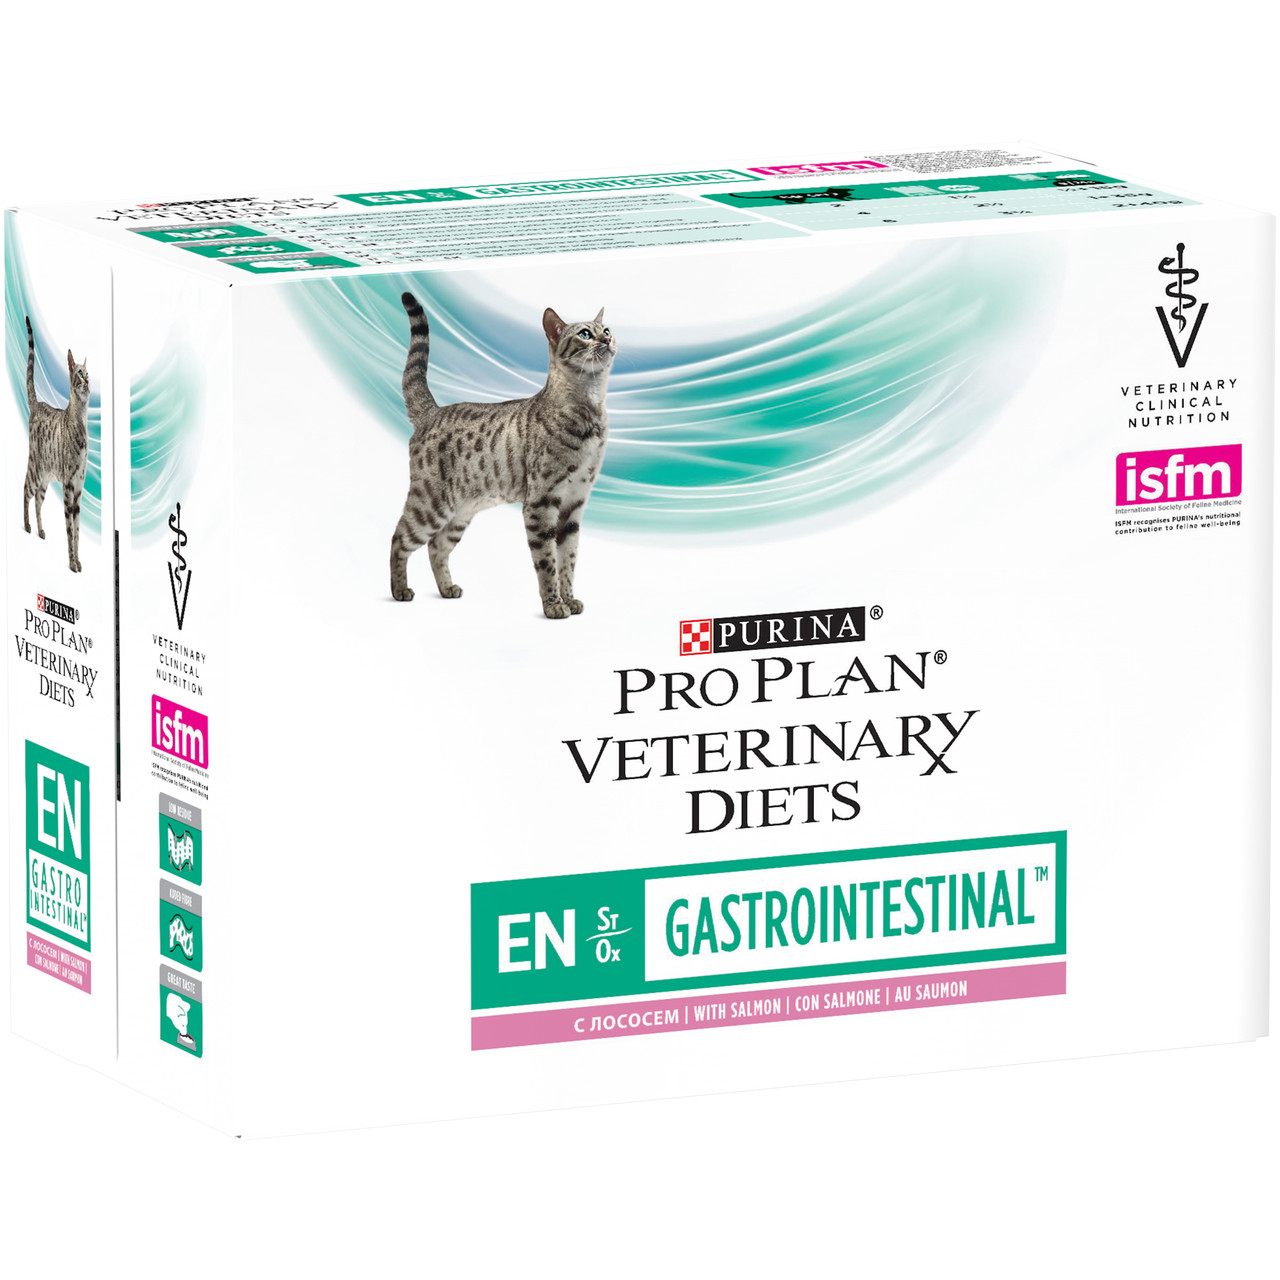 Вологий лікувальний корм Pro Plan veterinary diets gastrointestinal для кішок з лососем 0.085 КГ 10шт.